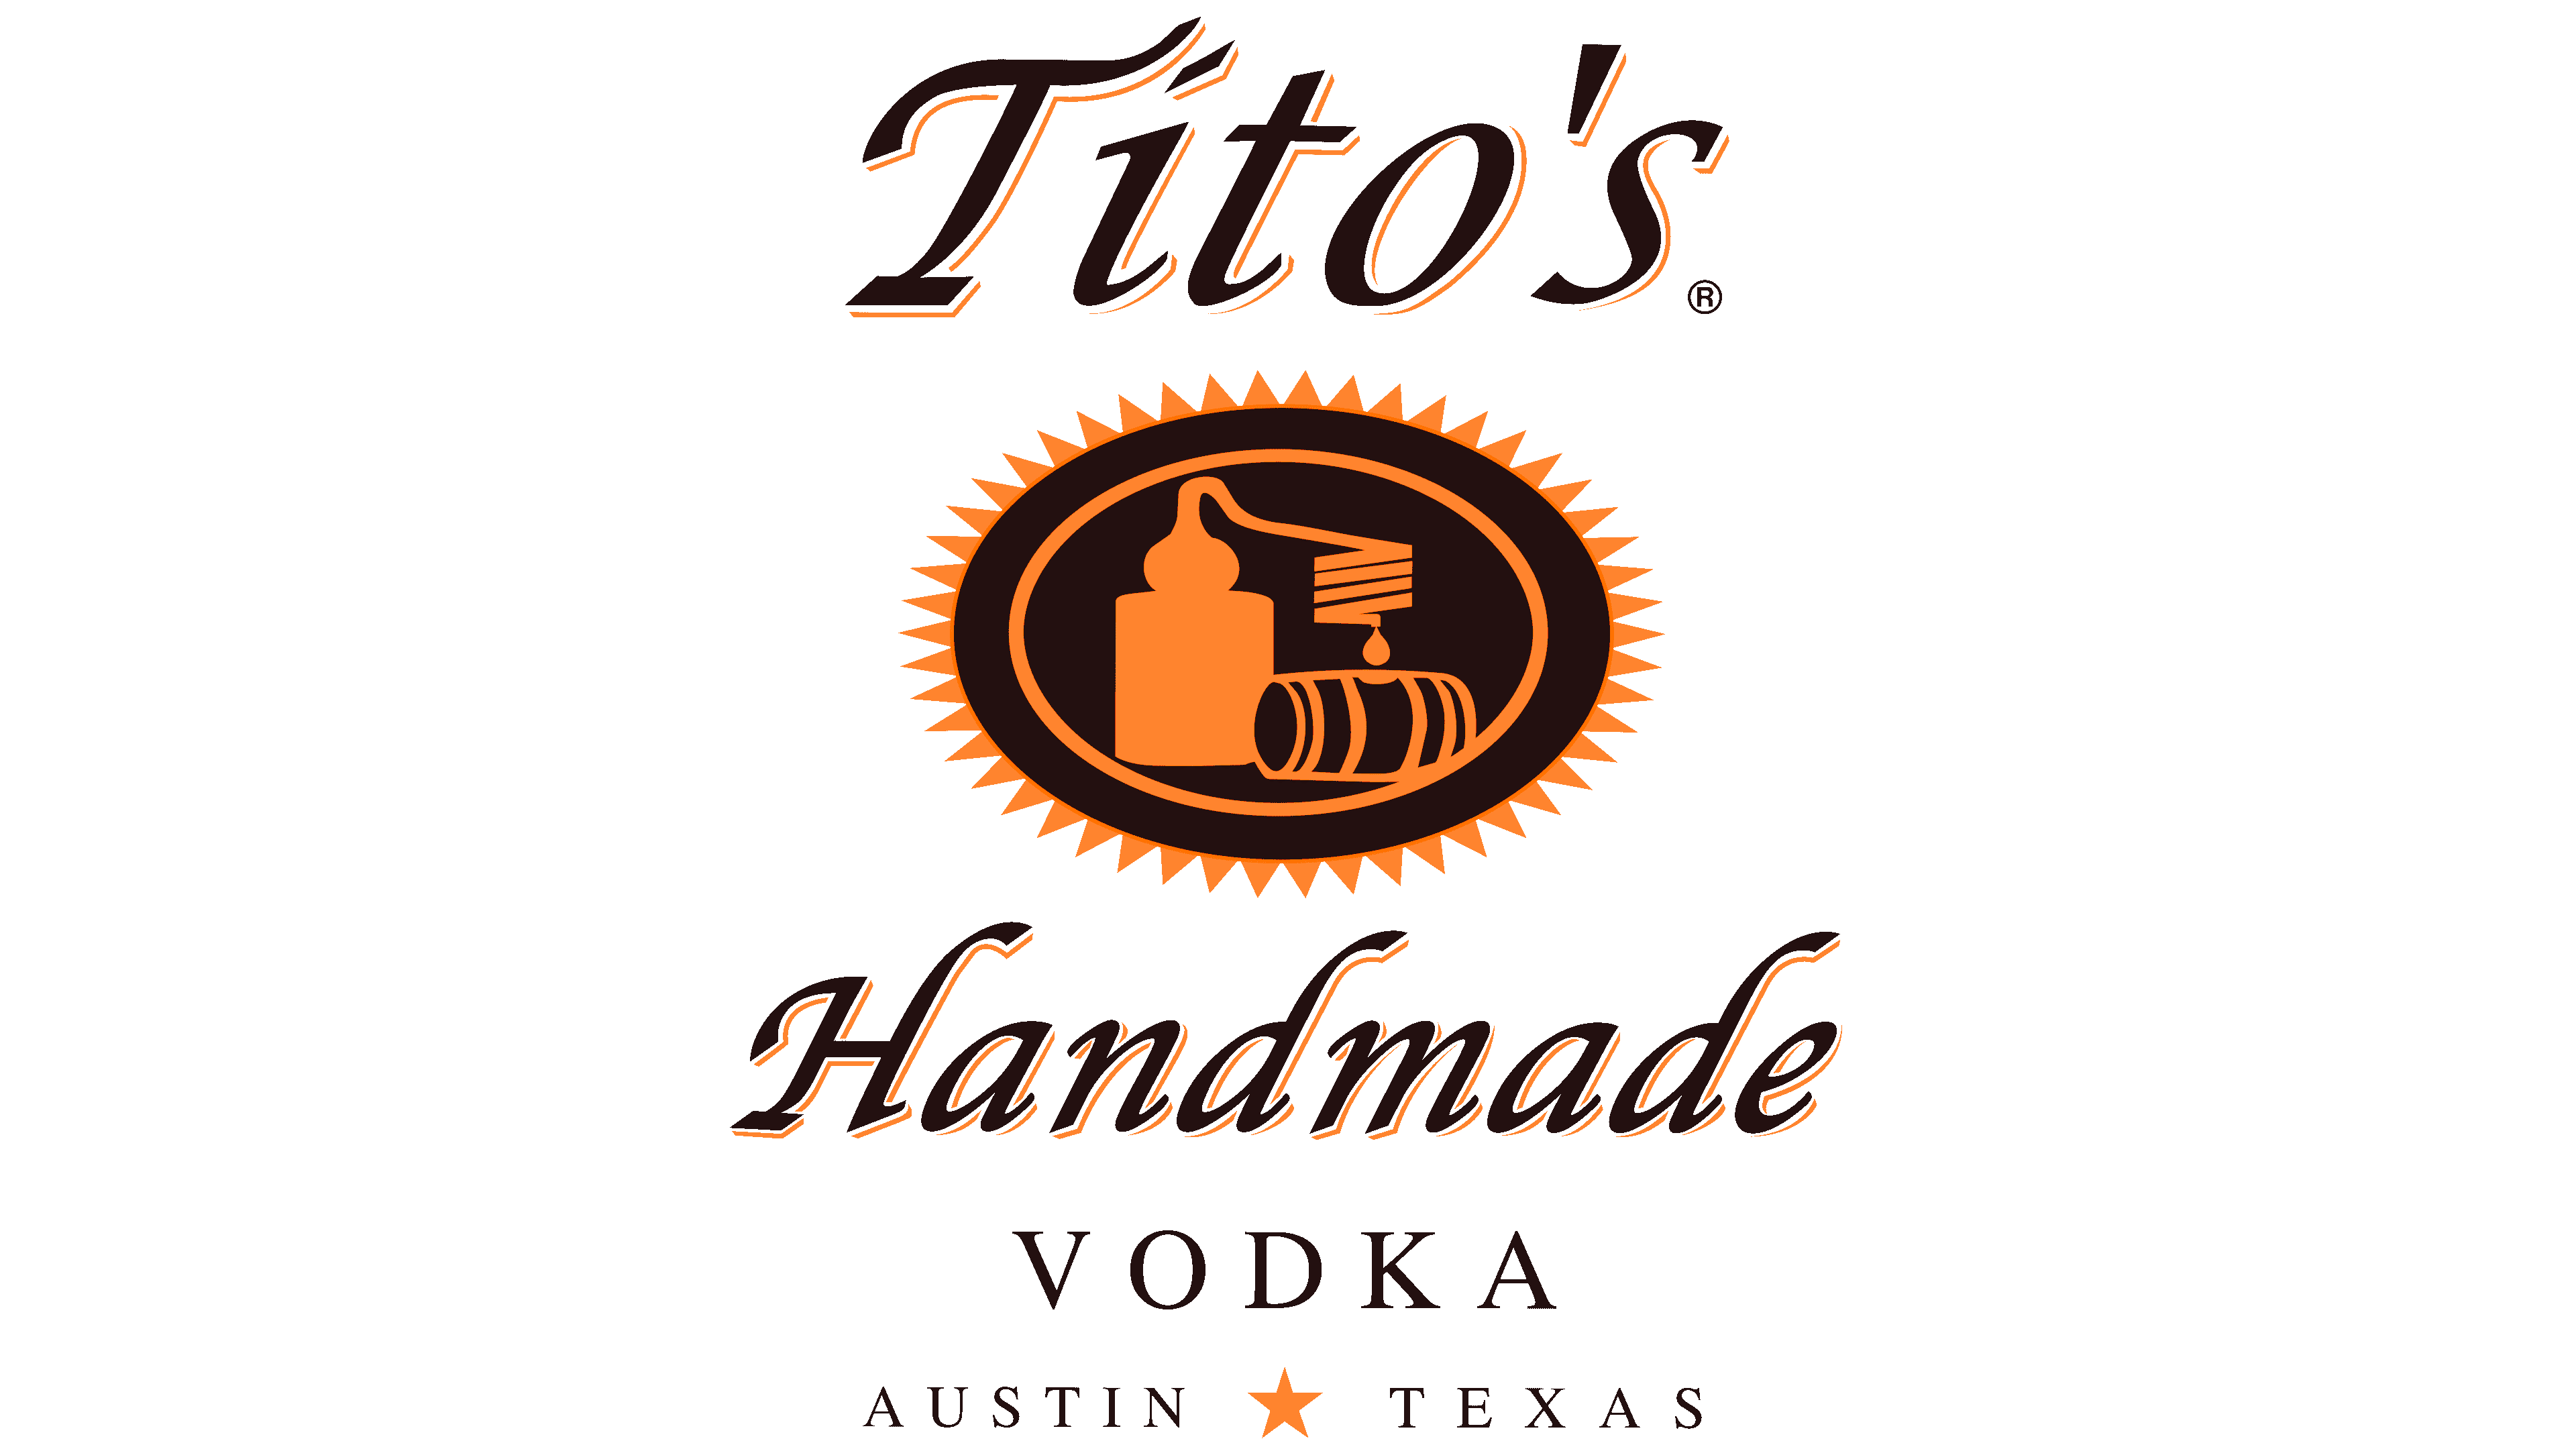 Titos-Logo